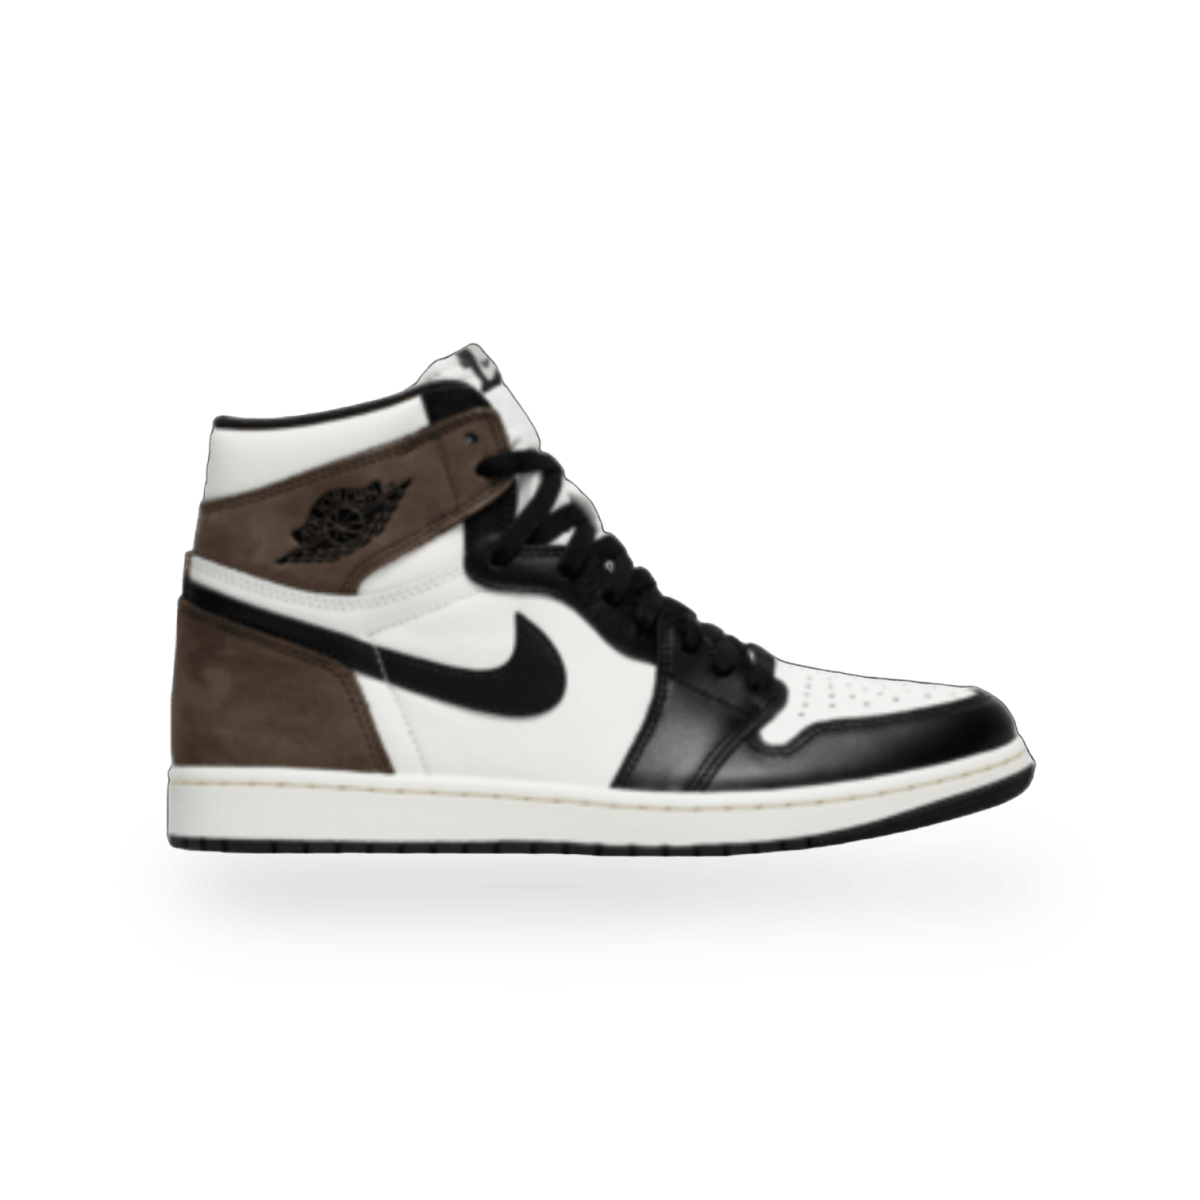 Jordan 1 Retro High OG Dark Mocha - High Sneaker - Jawns on Fire Sneakers & Streetwear